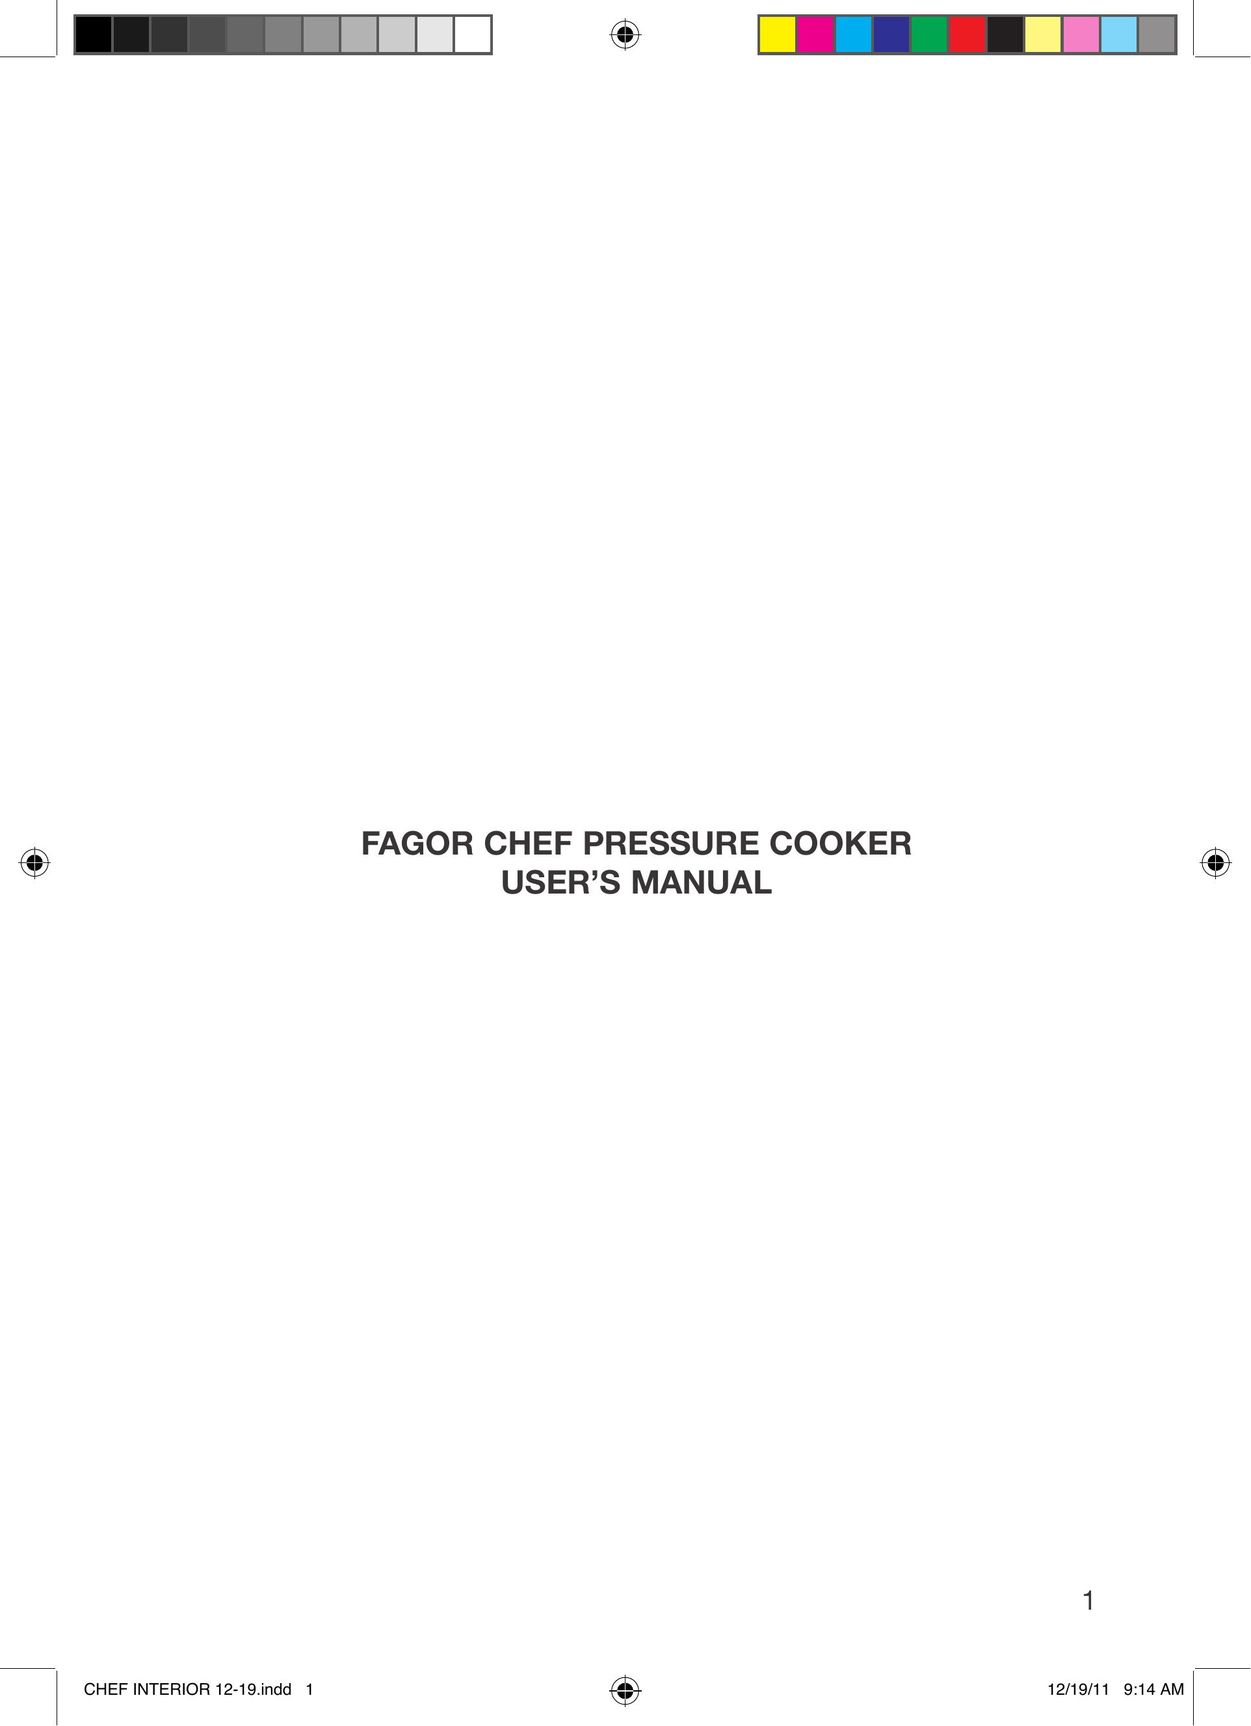 Fagor America 918010053 Electric Pressure Cooker User Manual